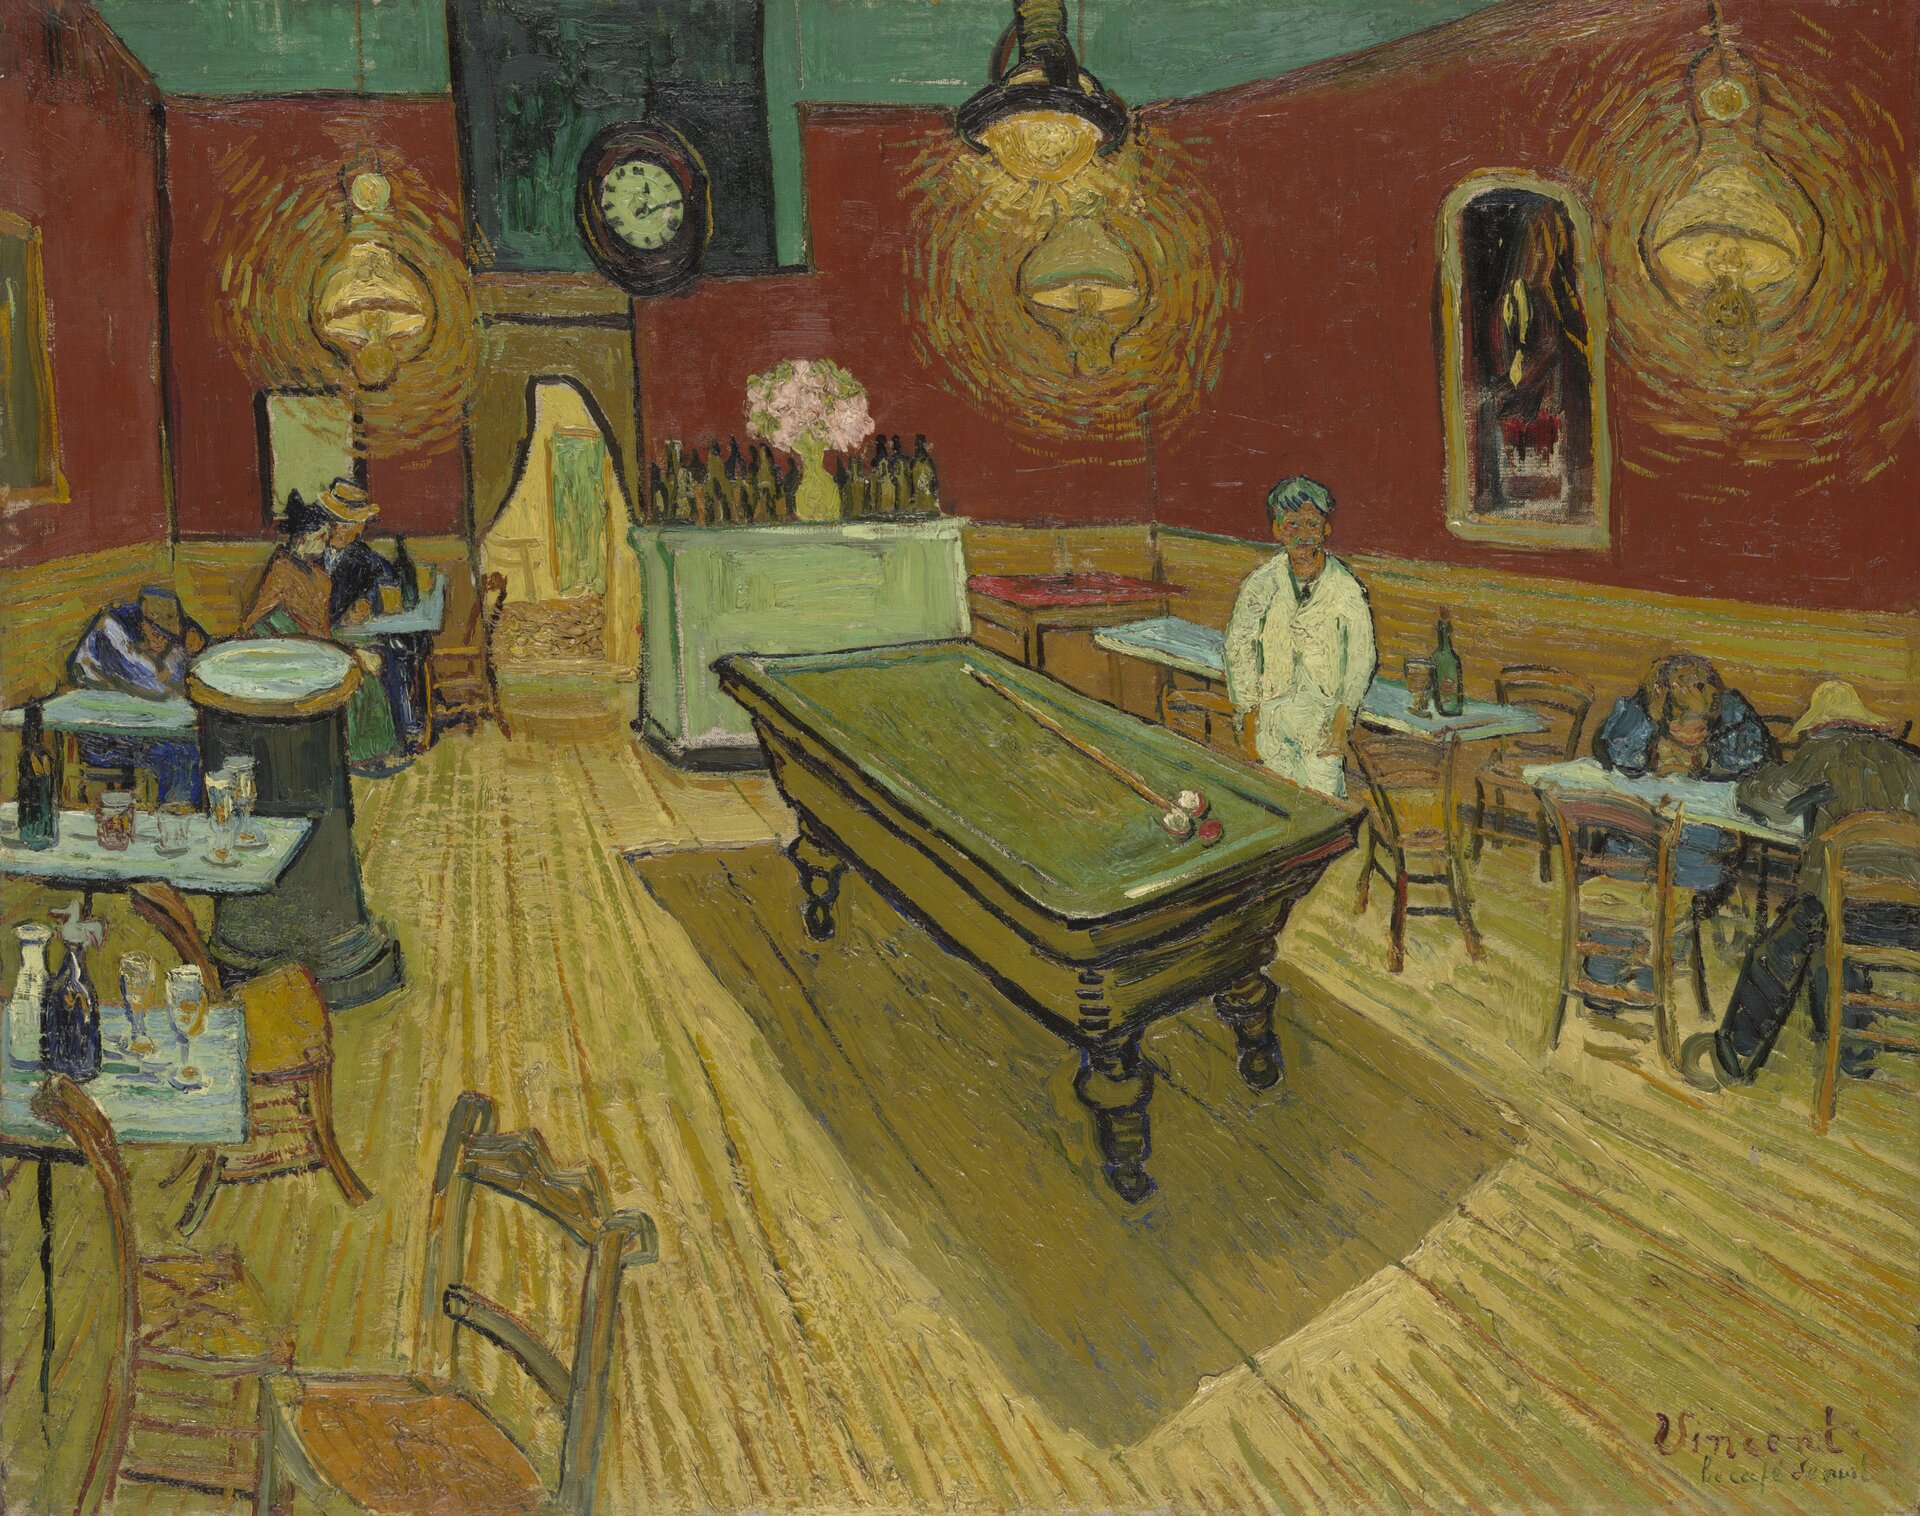 Ilustracja o kształcie poziomego prostokąta przedstawia obraz Vincenta van Gogha „Nocna kawiarnia”.  Ukazuje wnętrze kawiarni ze stojącym pośrodku stołem bilardowym., przy którym stoi mężczyzna. Po bokach ustawione są stoliki. Siedzą przy nich pojedyncze osoby. W tle widoczny jest bar. i wejście na zaplecze kawiarni. Wnętrze oświetlone jest przez wiszące lampy. Ściany kawiarni są w kolorze ceglastej, ciemnej czerwieni.  